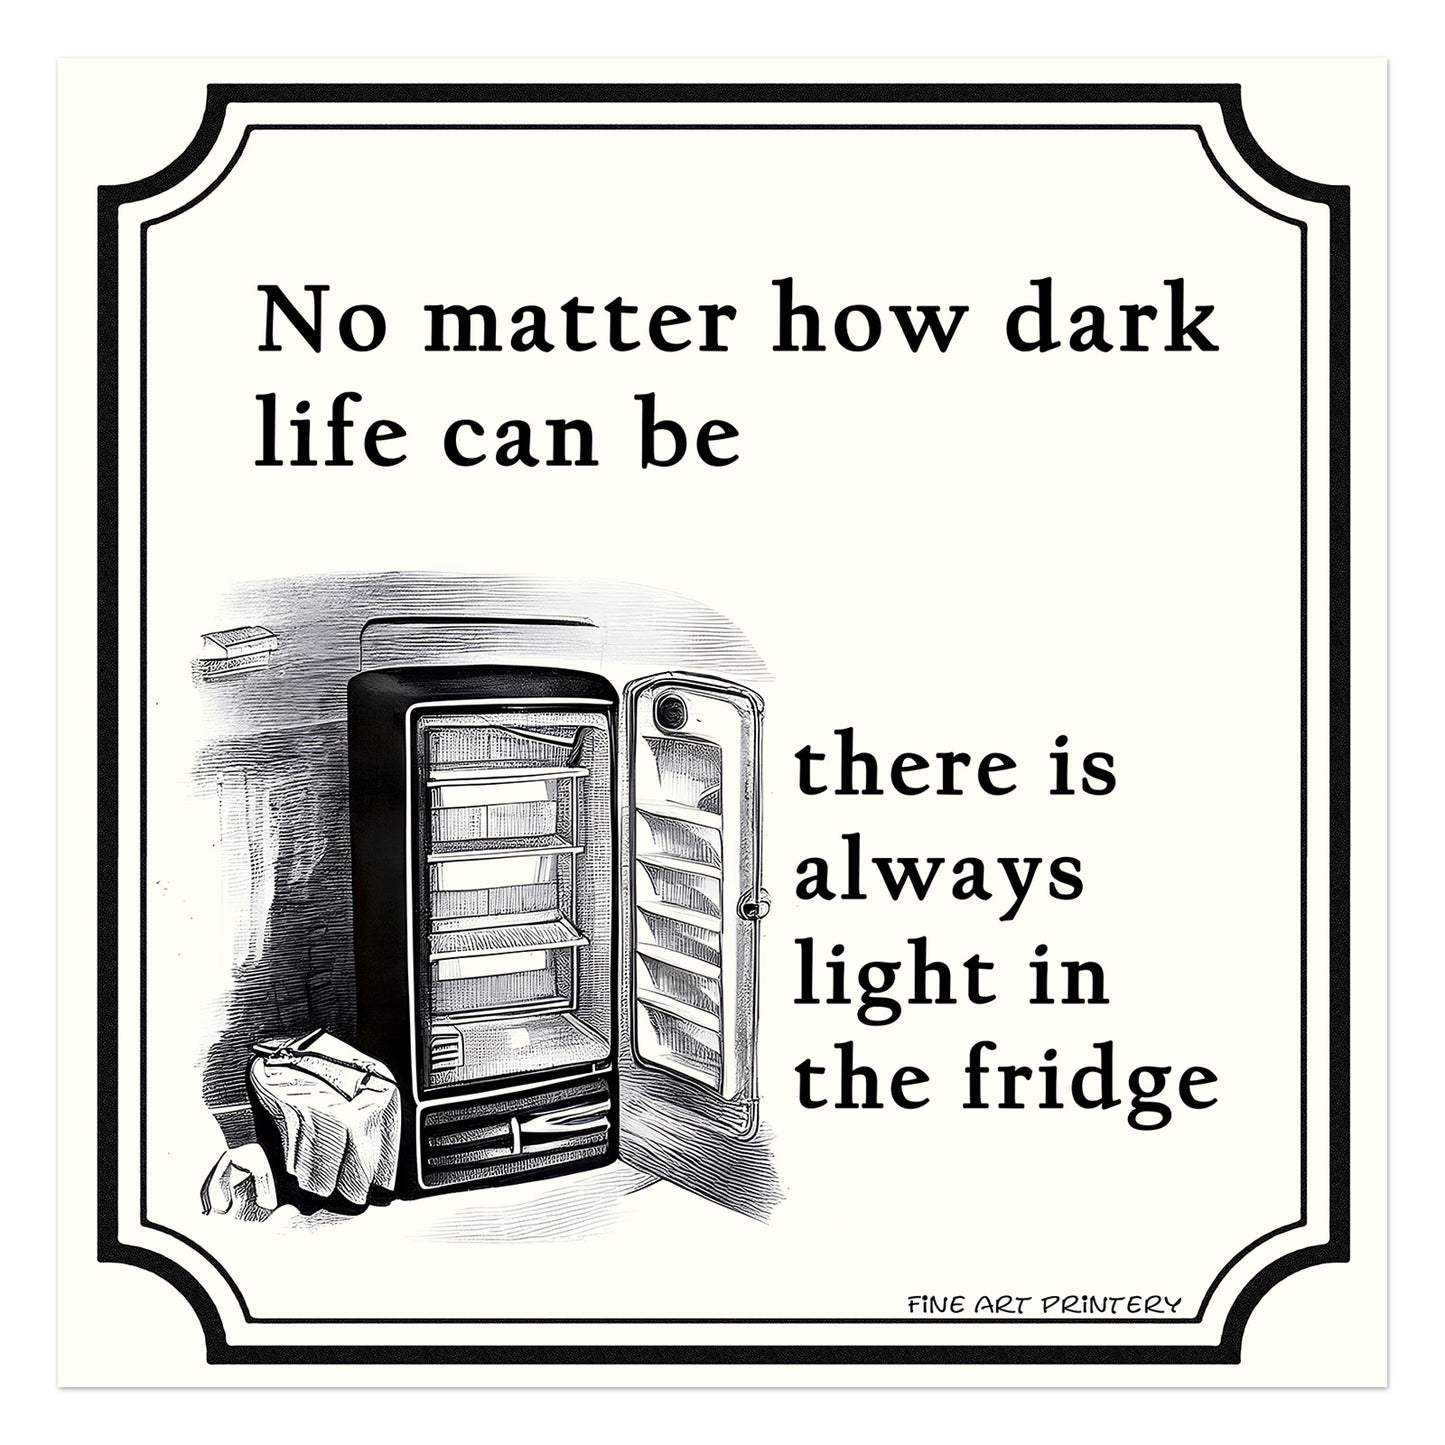 Uanset hvor mørkt livet kan være, er der altid lys i køleskabet